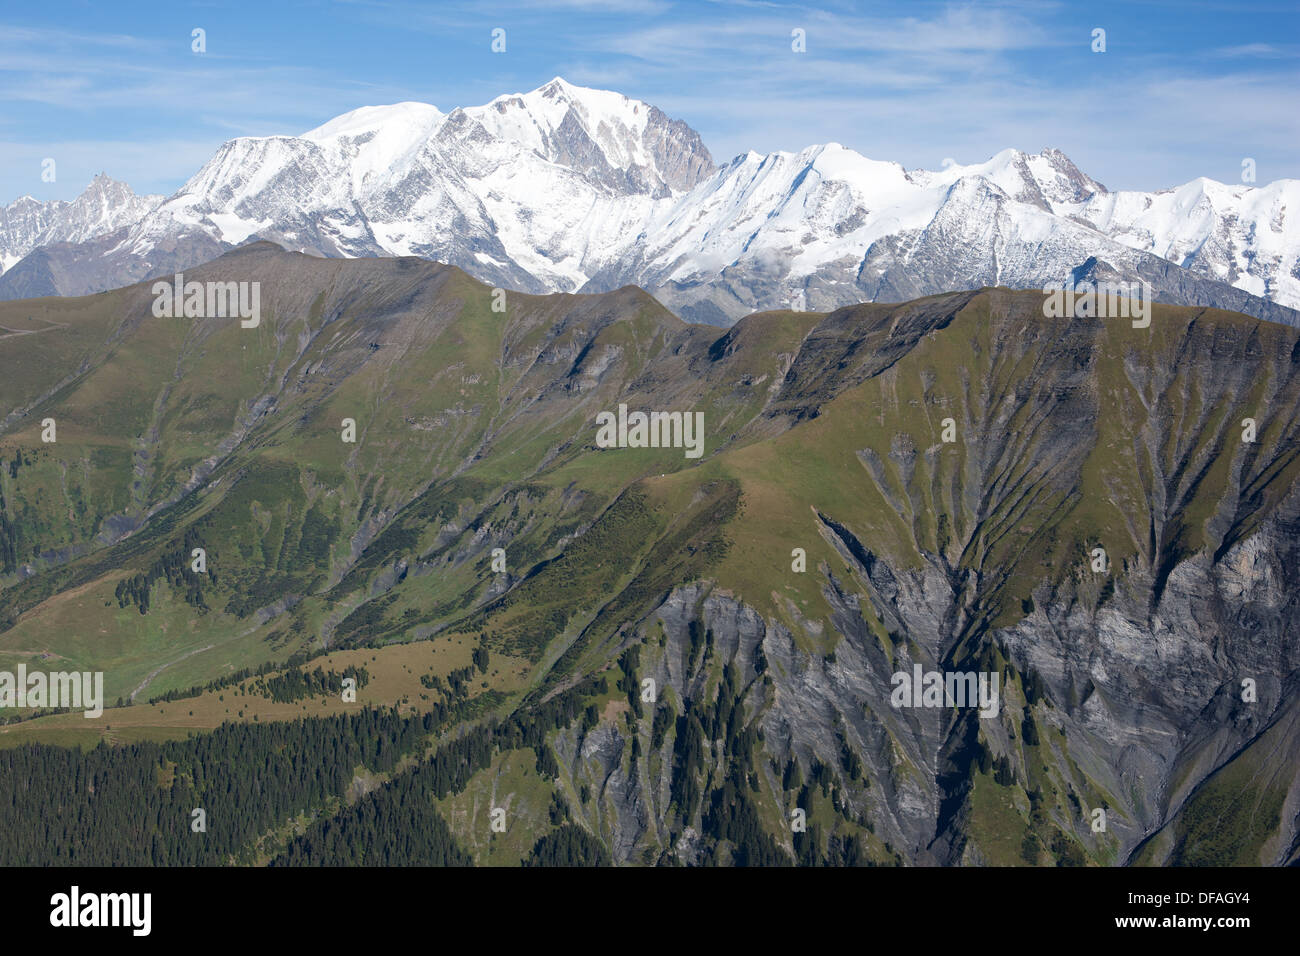 LUFTAUFNAHME. 4810 Meter hoher Mont Blanc, der hinter dem grasbewachsenen Mont Joly steht (Höhe: 2525m). Haute-Savoie, Auvergne-Rhône-Alpes, Frankreich. Stockfoto